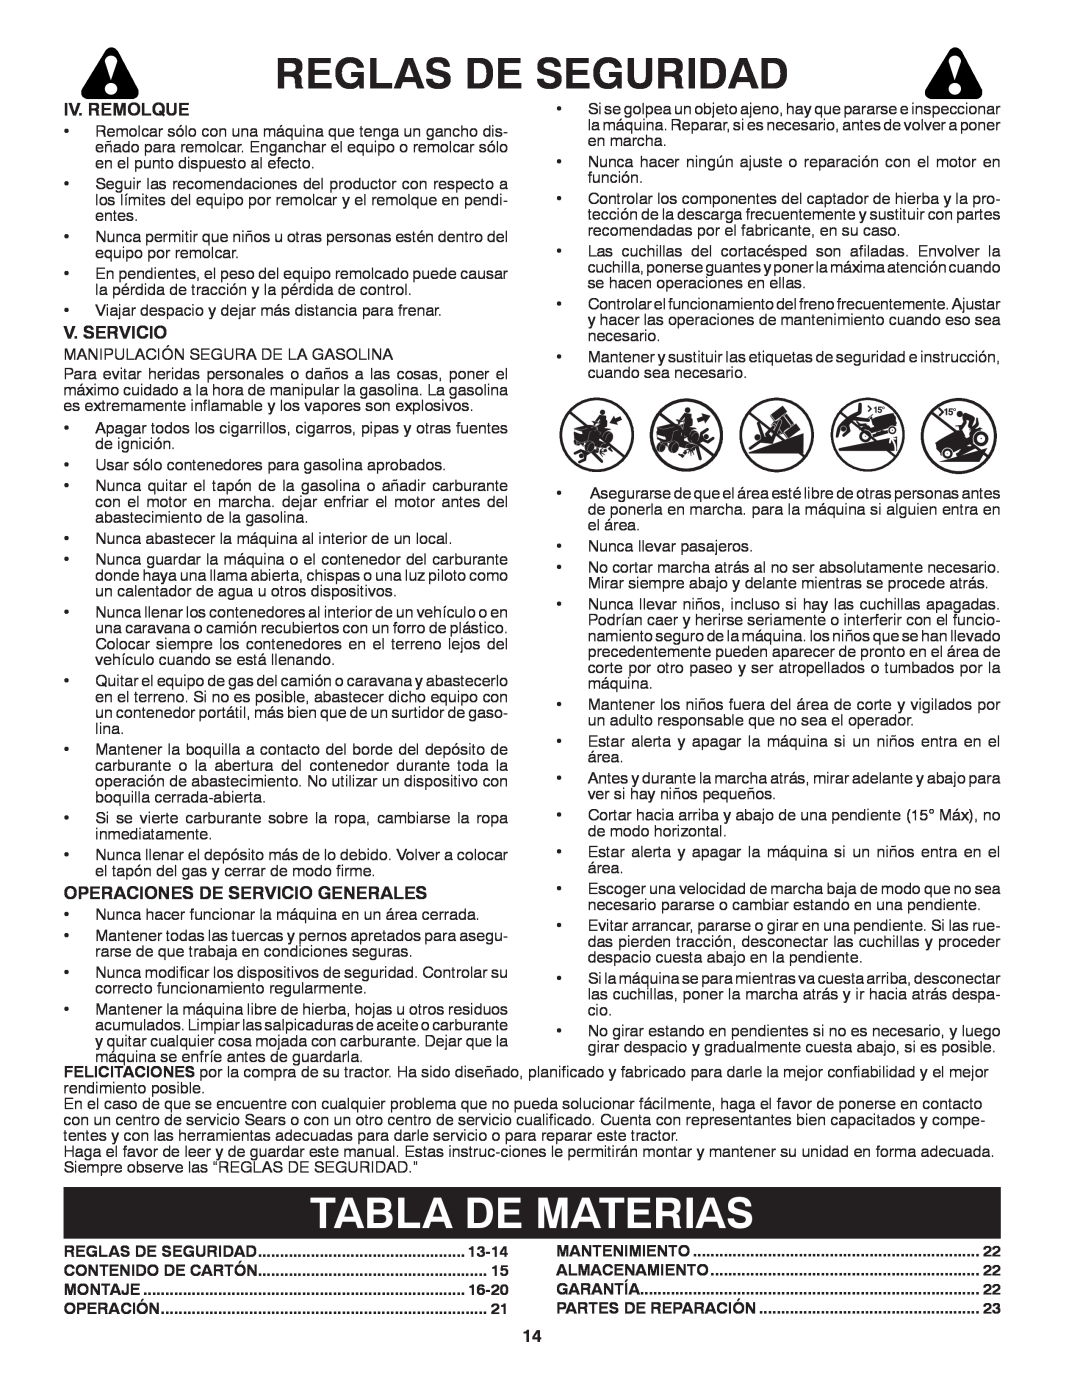 Craftsman 917.24991 manual Tabla De Materias, Reglas De Seguridad, Contenido De Cartón, Montaje, Operación, Mantenimiento 